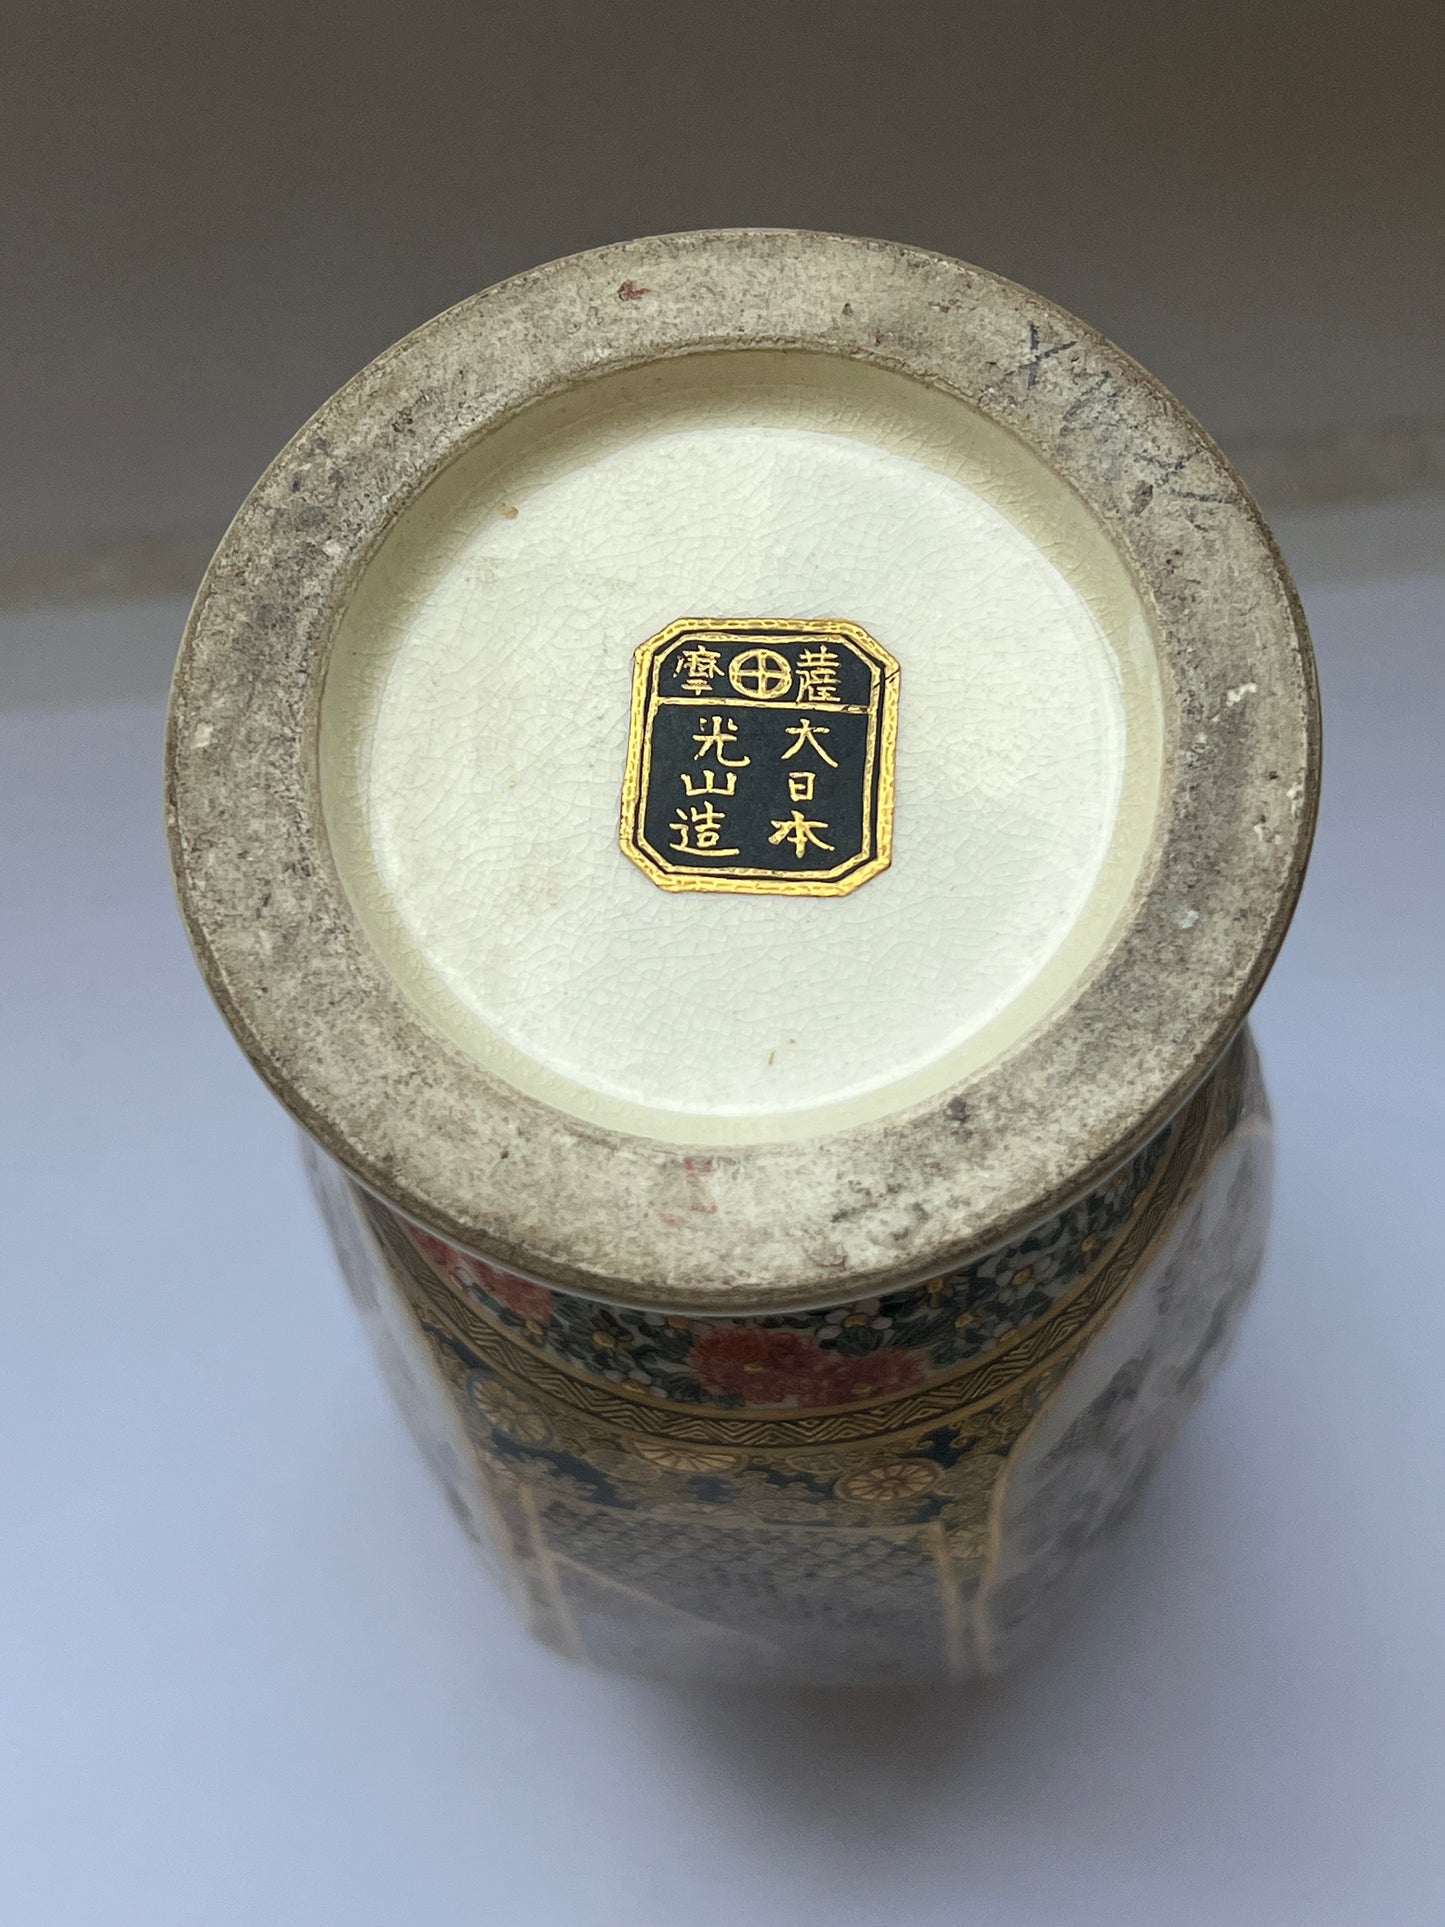 日本明治时期古董萨摩六角花瓶，由 Kozan 制作，约 19 世纪中后期（19 世纪 60 年代至 19 世纪 90 年代）